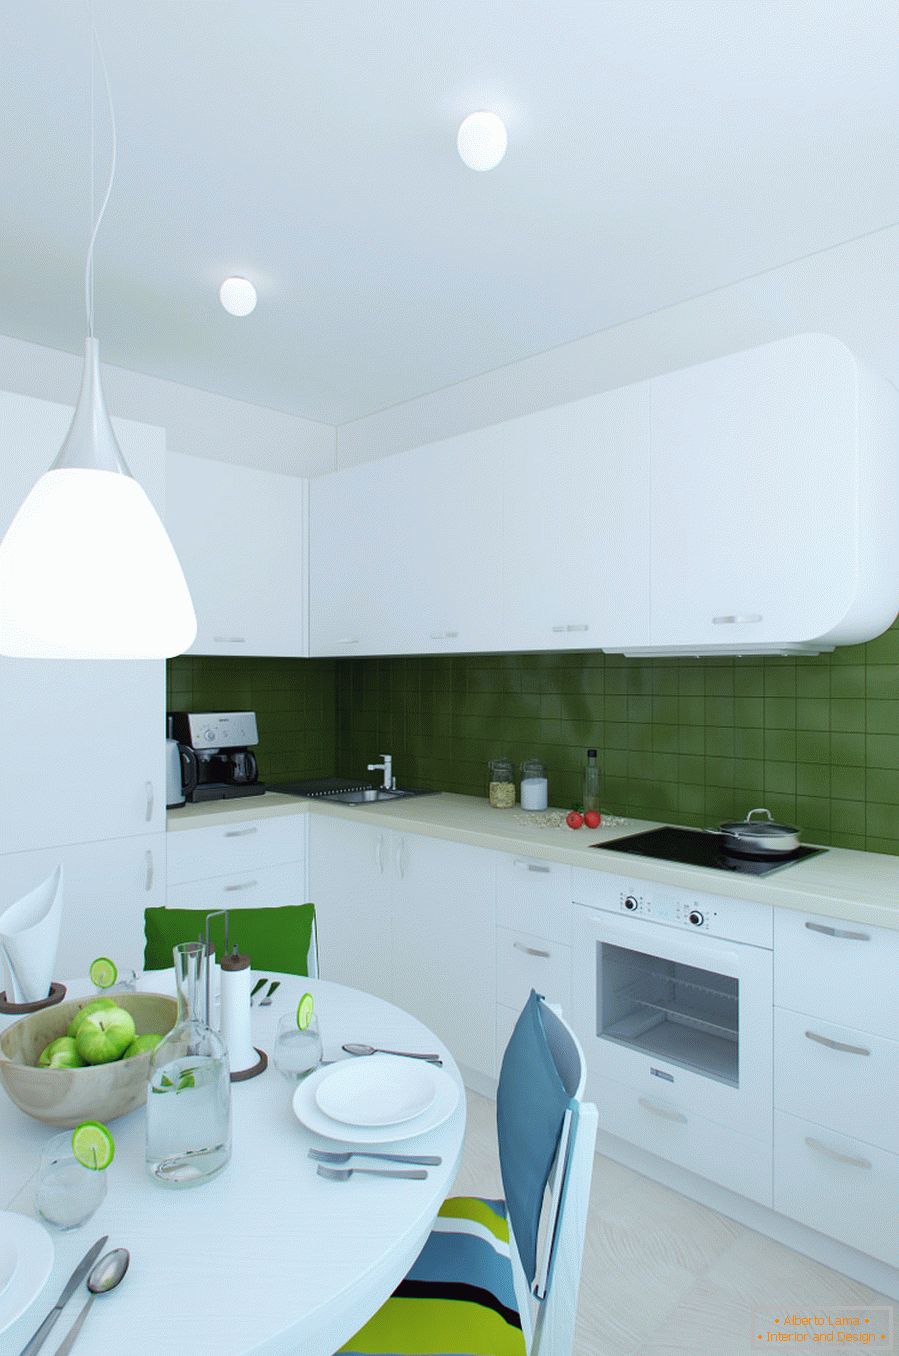 Design de interiores de cozinha nas cores brancas e verdes